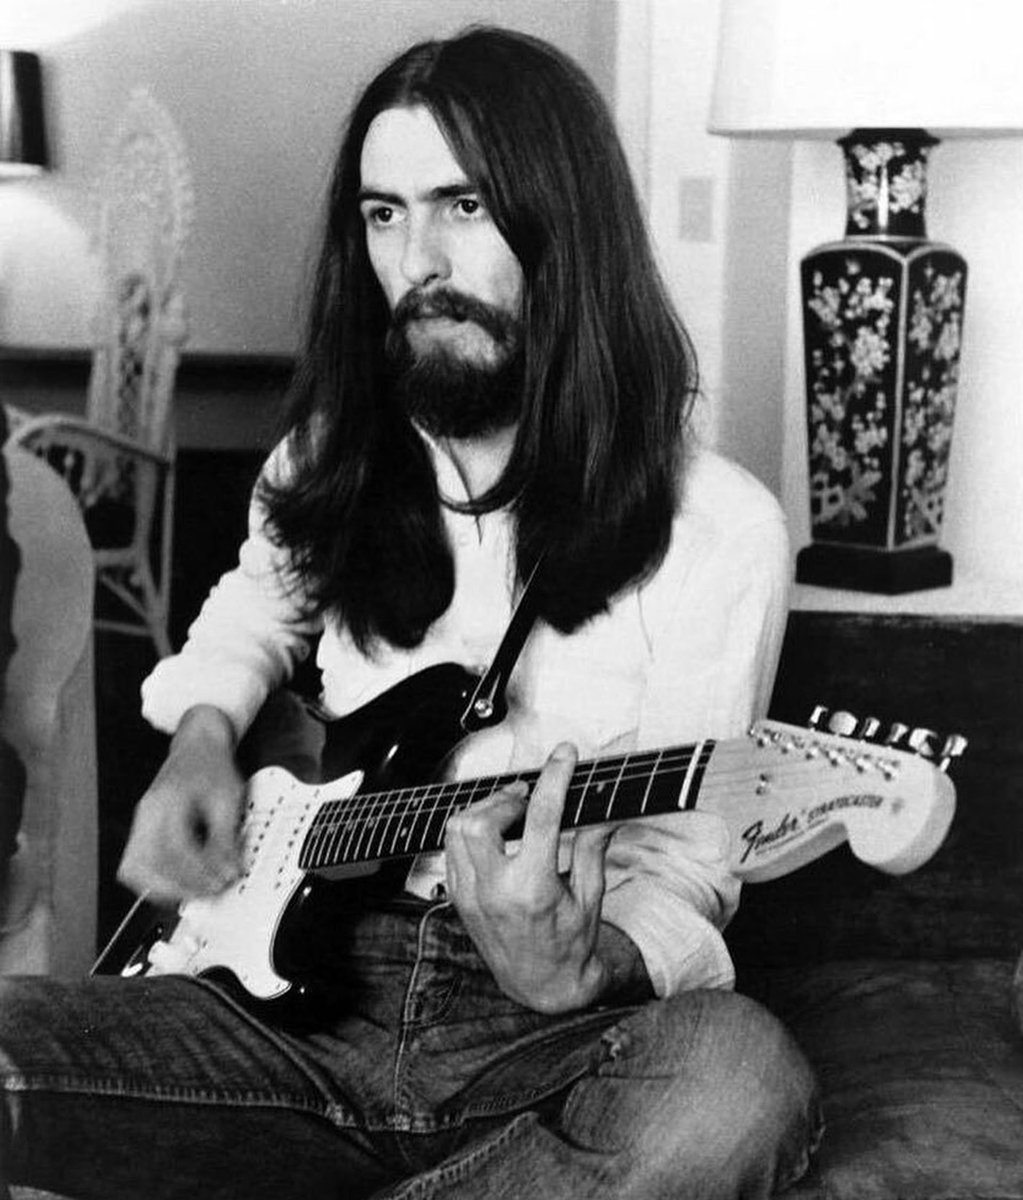 Un día como hoy, pero de 1943, nace George Harrison. Miembro de The Beatles y que falleció en 2001.

#HBDGeorge #George80